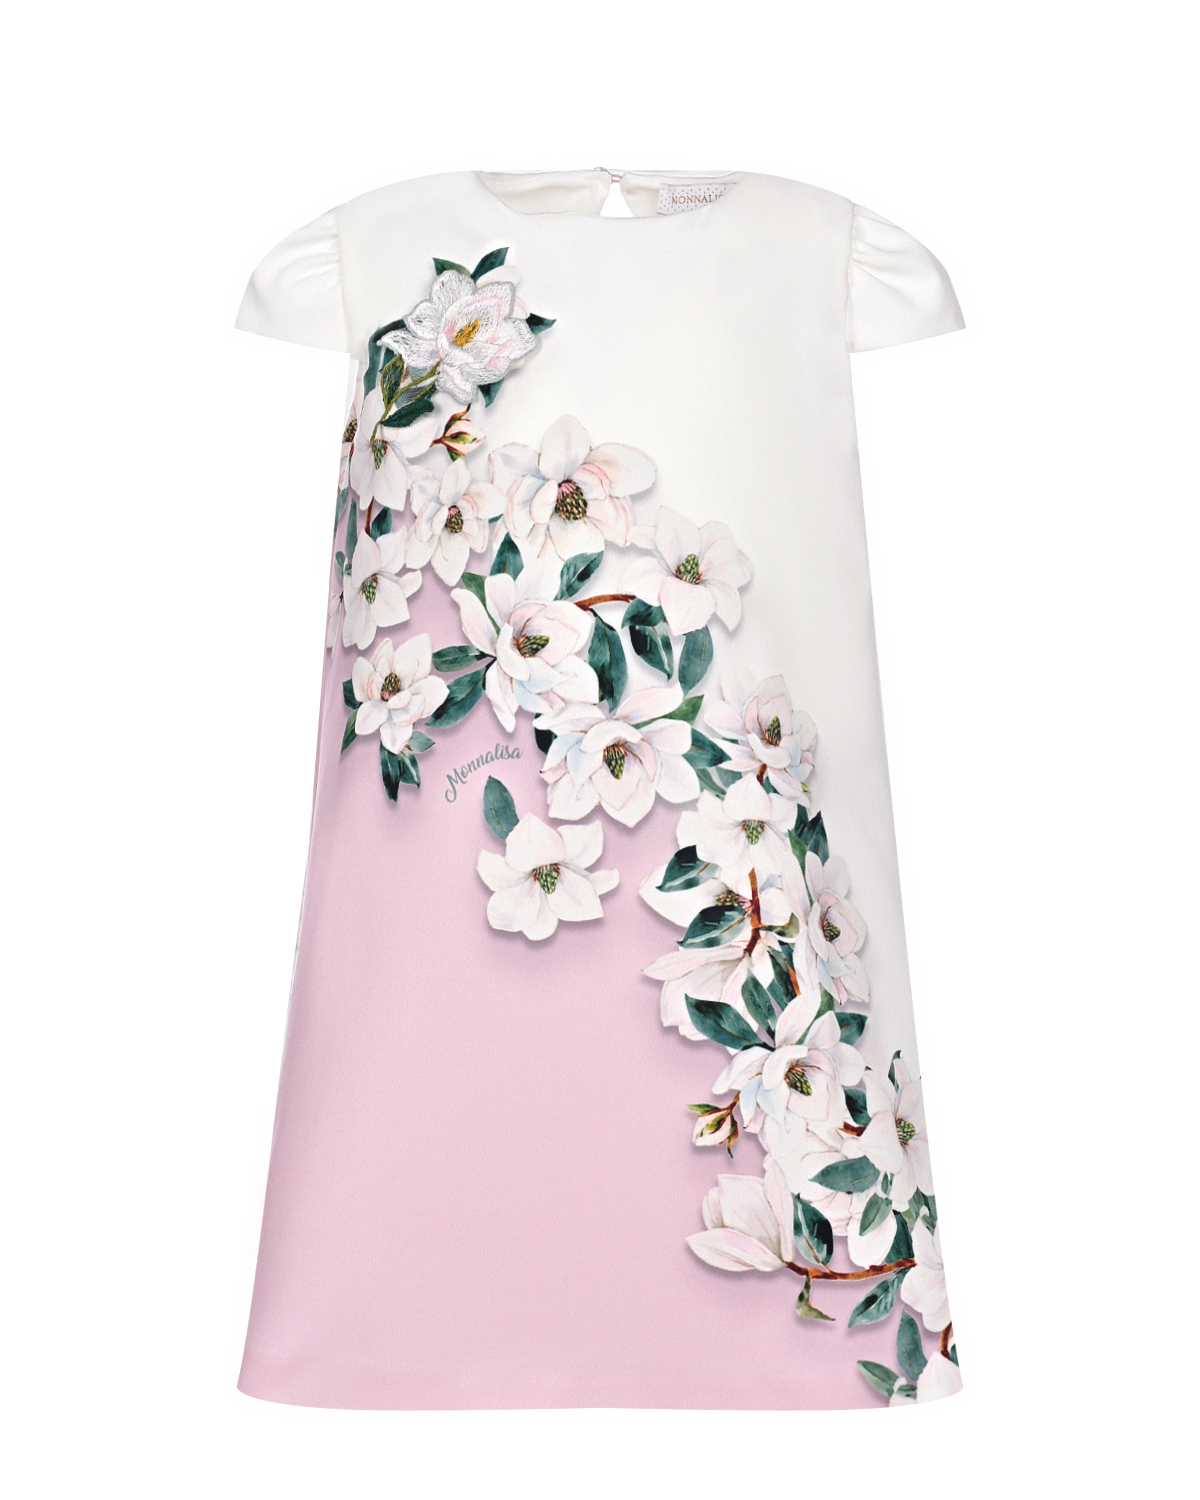 Бело-розовое платье с цветочным принтом Monnalisa платье женское ярко розовое